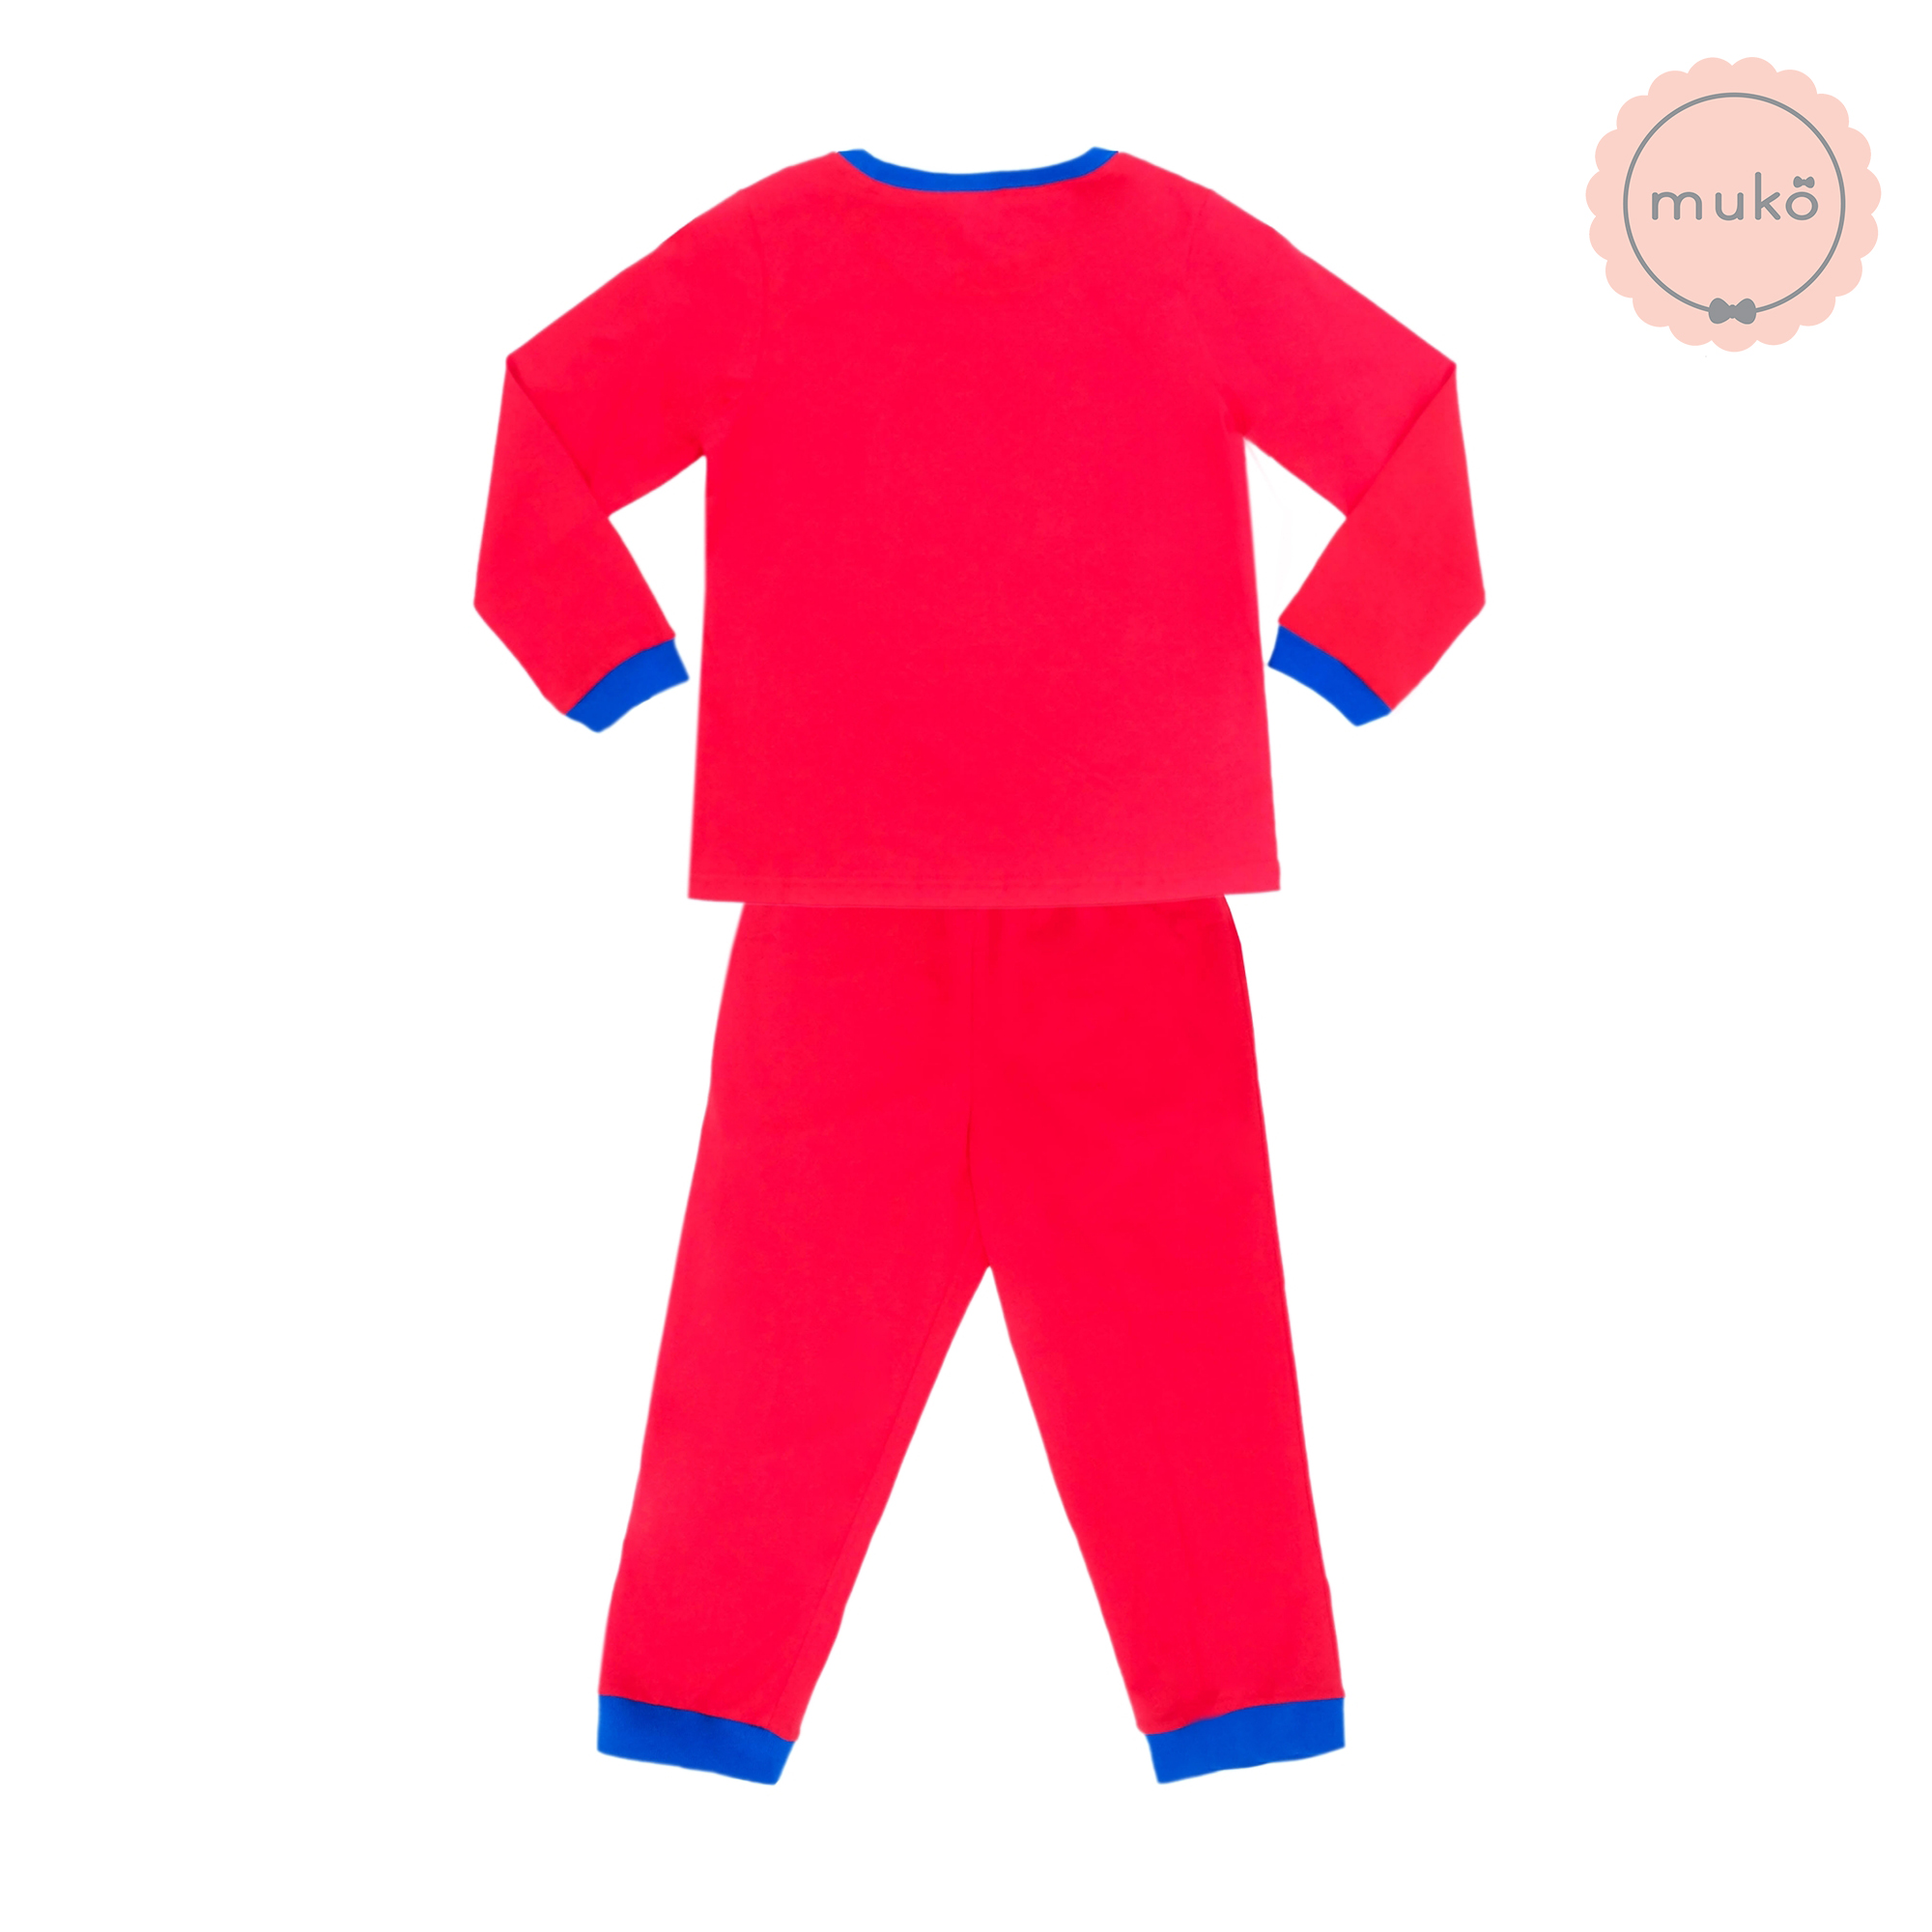 ชุดเด็ก 7-10 ขวบ แขนยาว-ขายาว (Size XL) DPC127-09-XL-Red XL ลายเจ้าหญิงสโนไวท์ Snow white สีแดง (แดงทั้งชุดขอบน้ำเงิน)